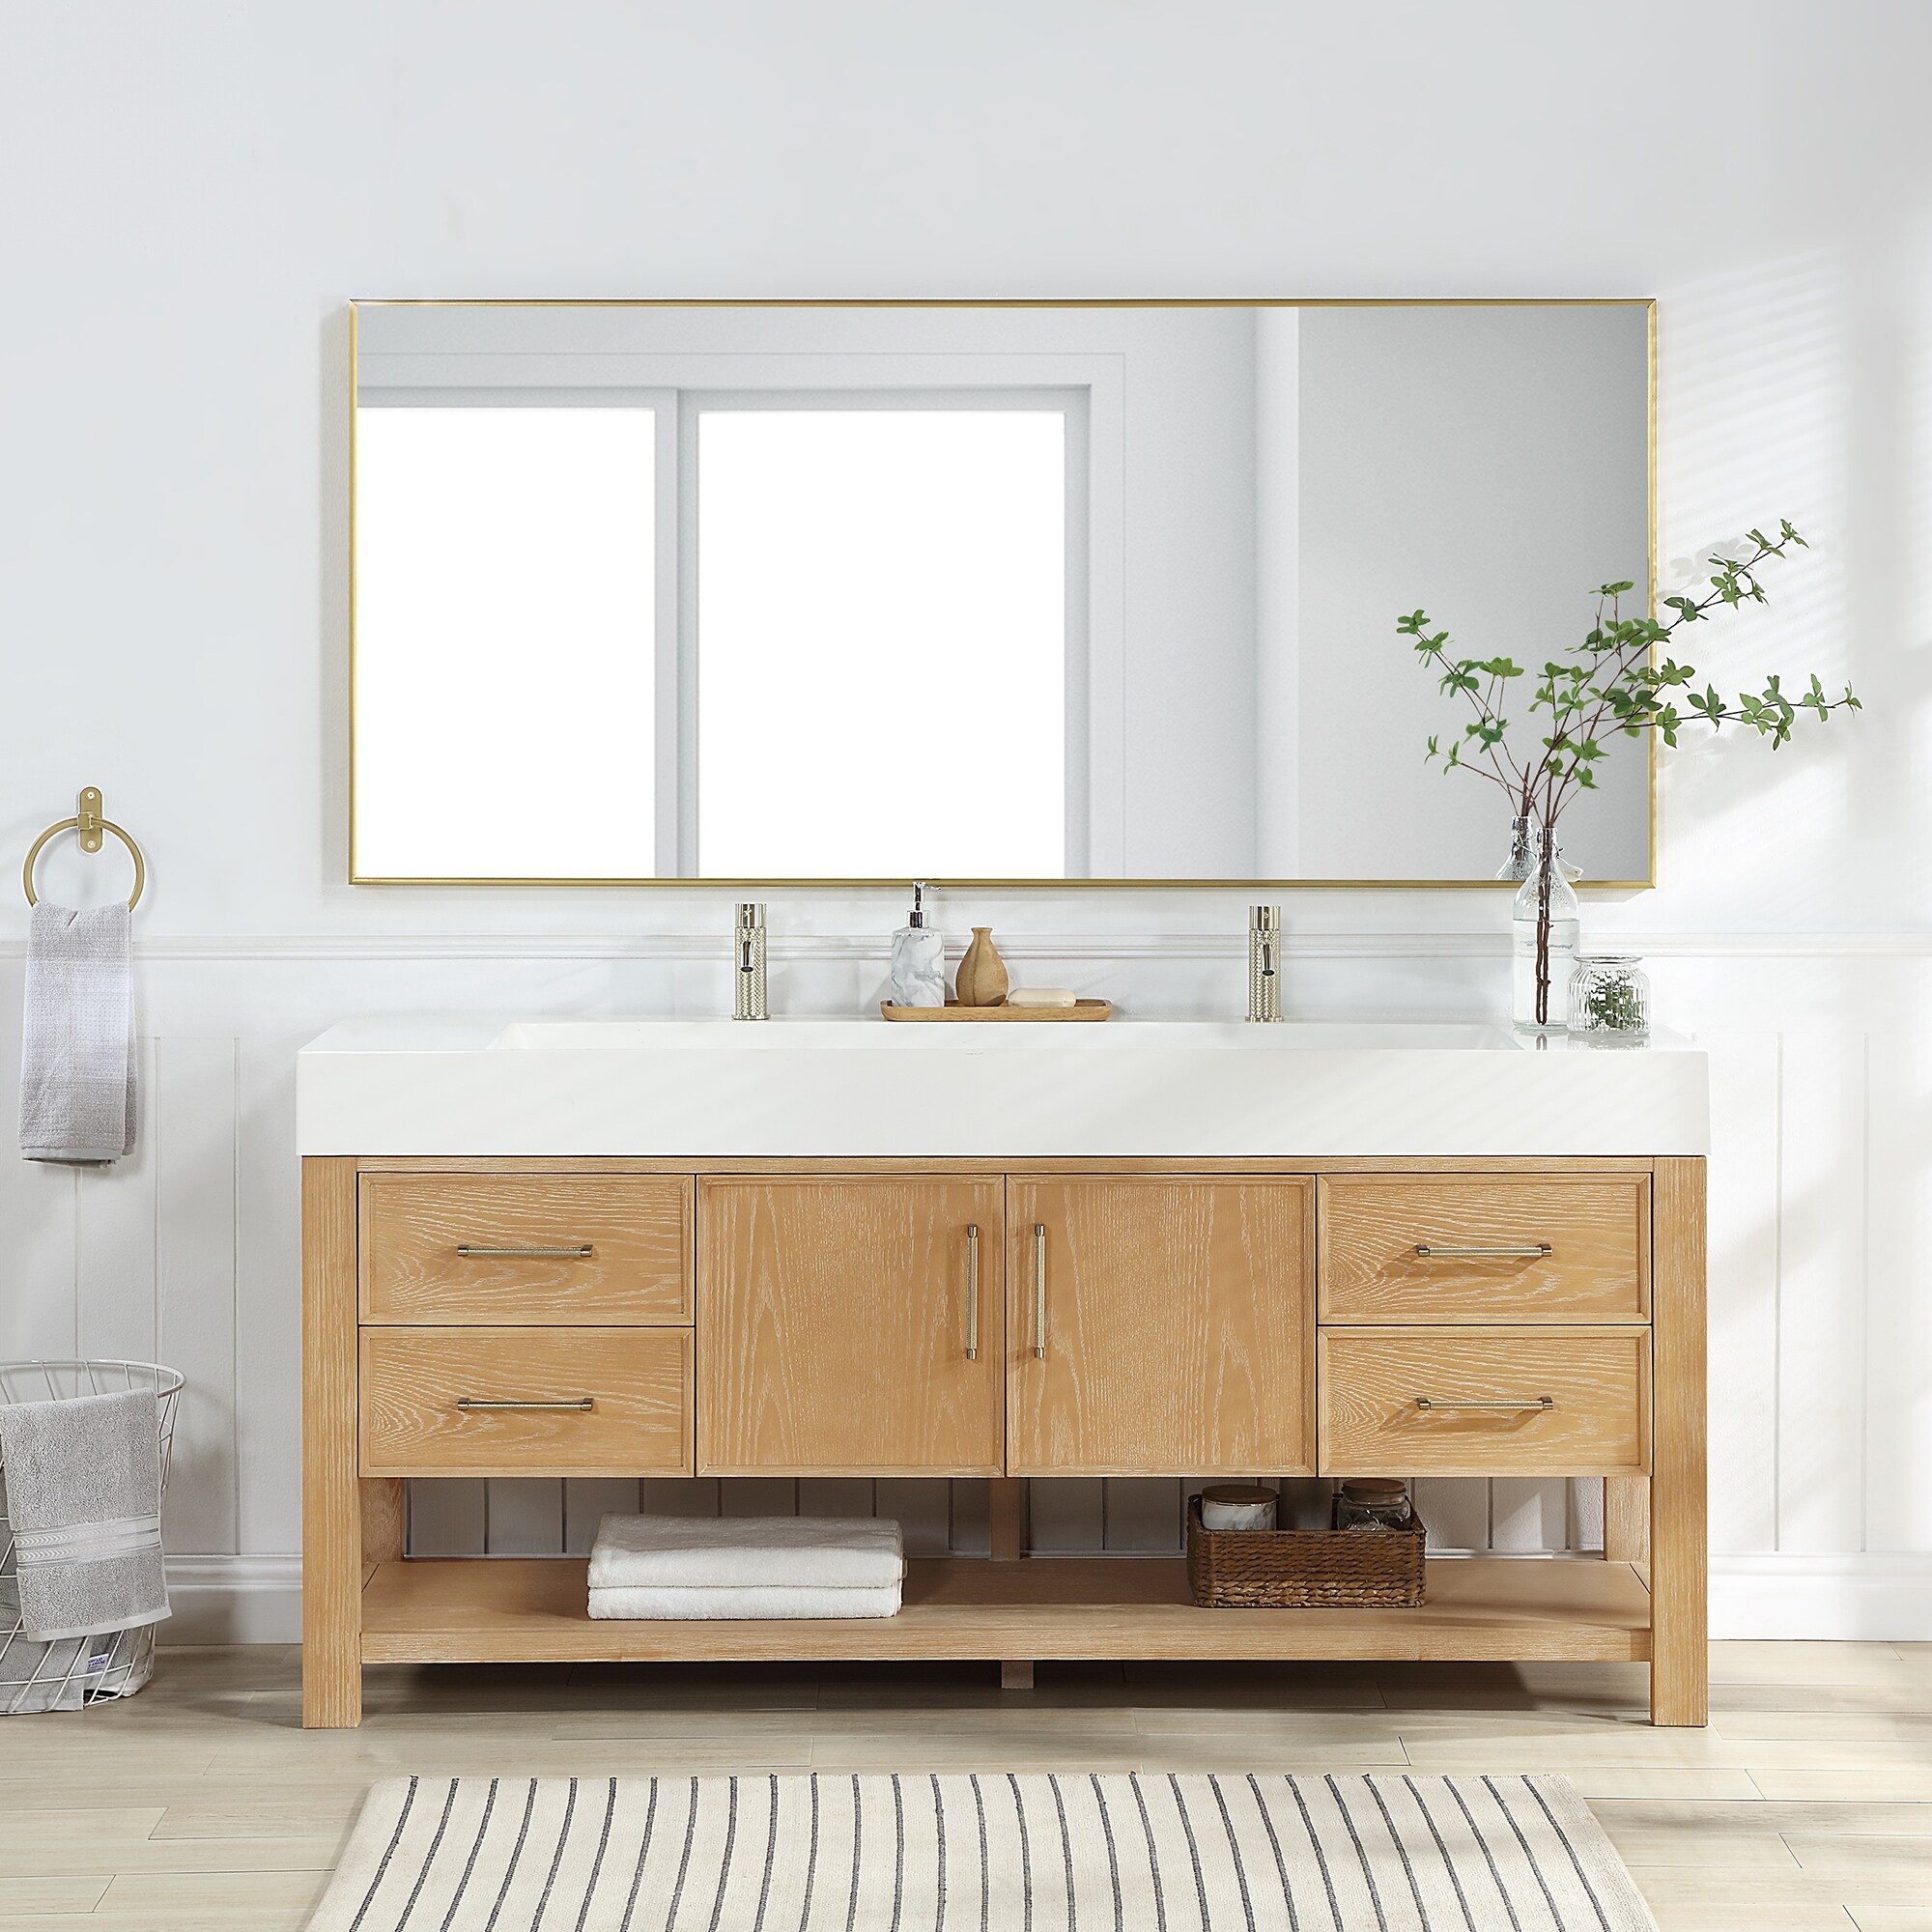 Raised Panel Oak Bathroom Cabinet - On Sale - Bed Bath & Beyond - 9184420